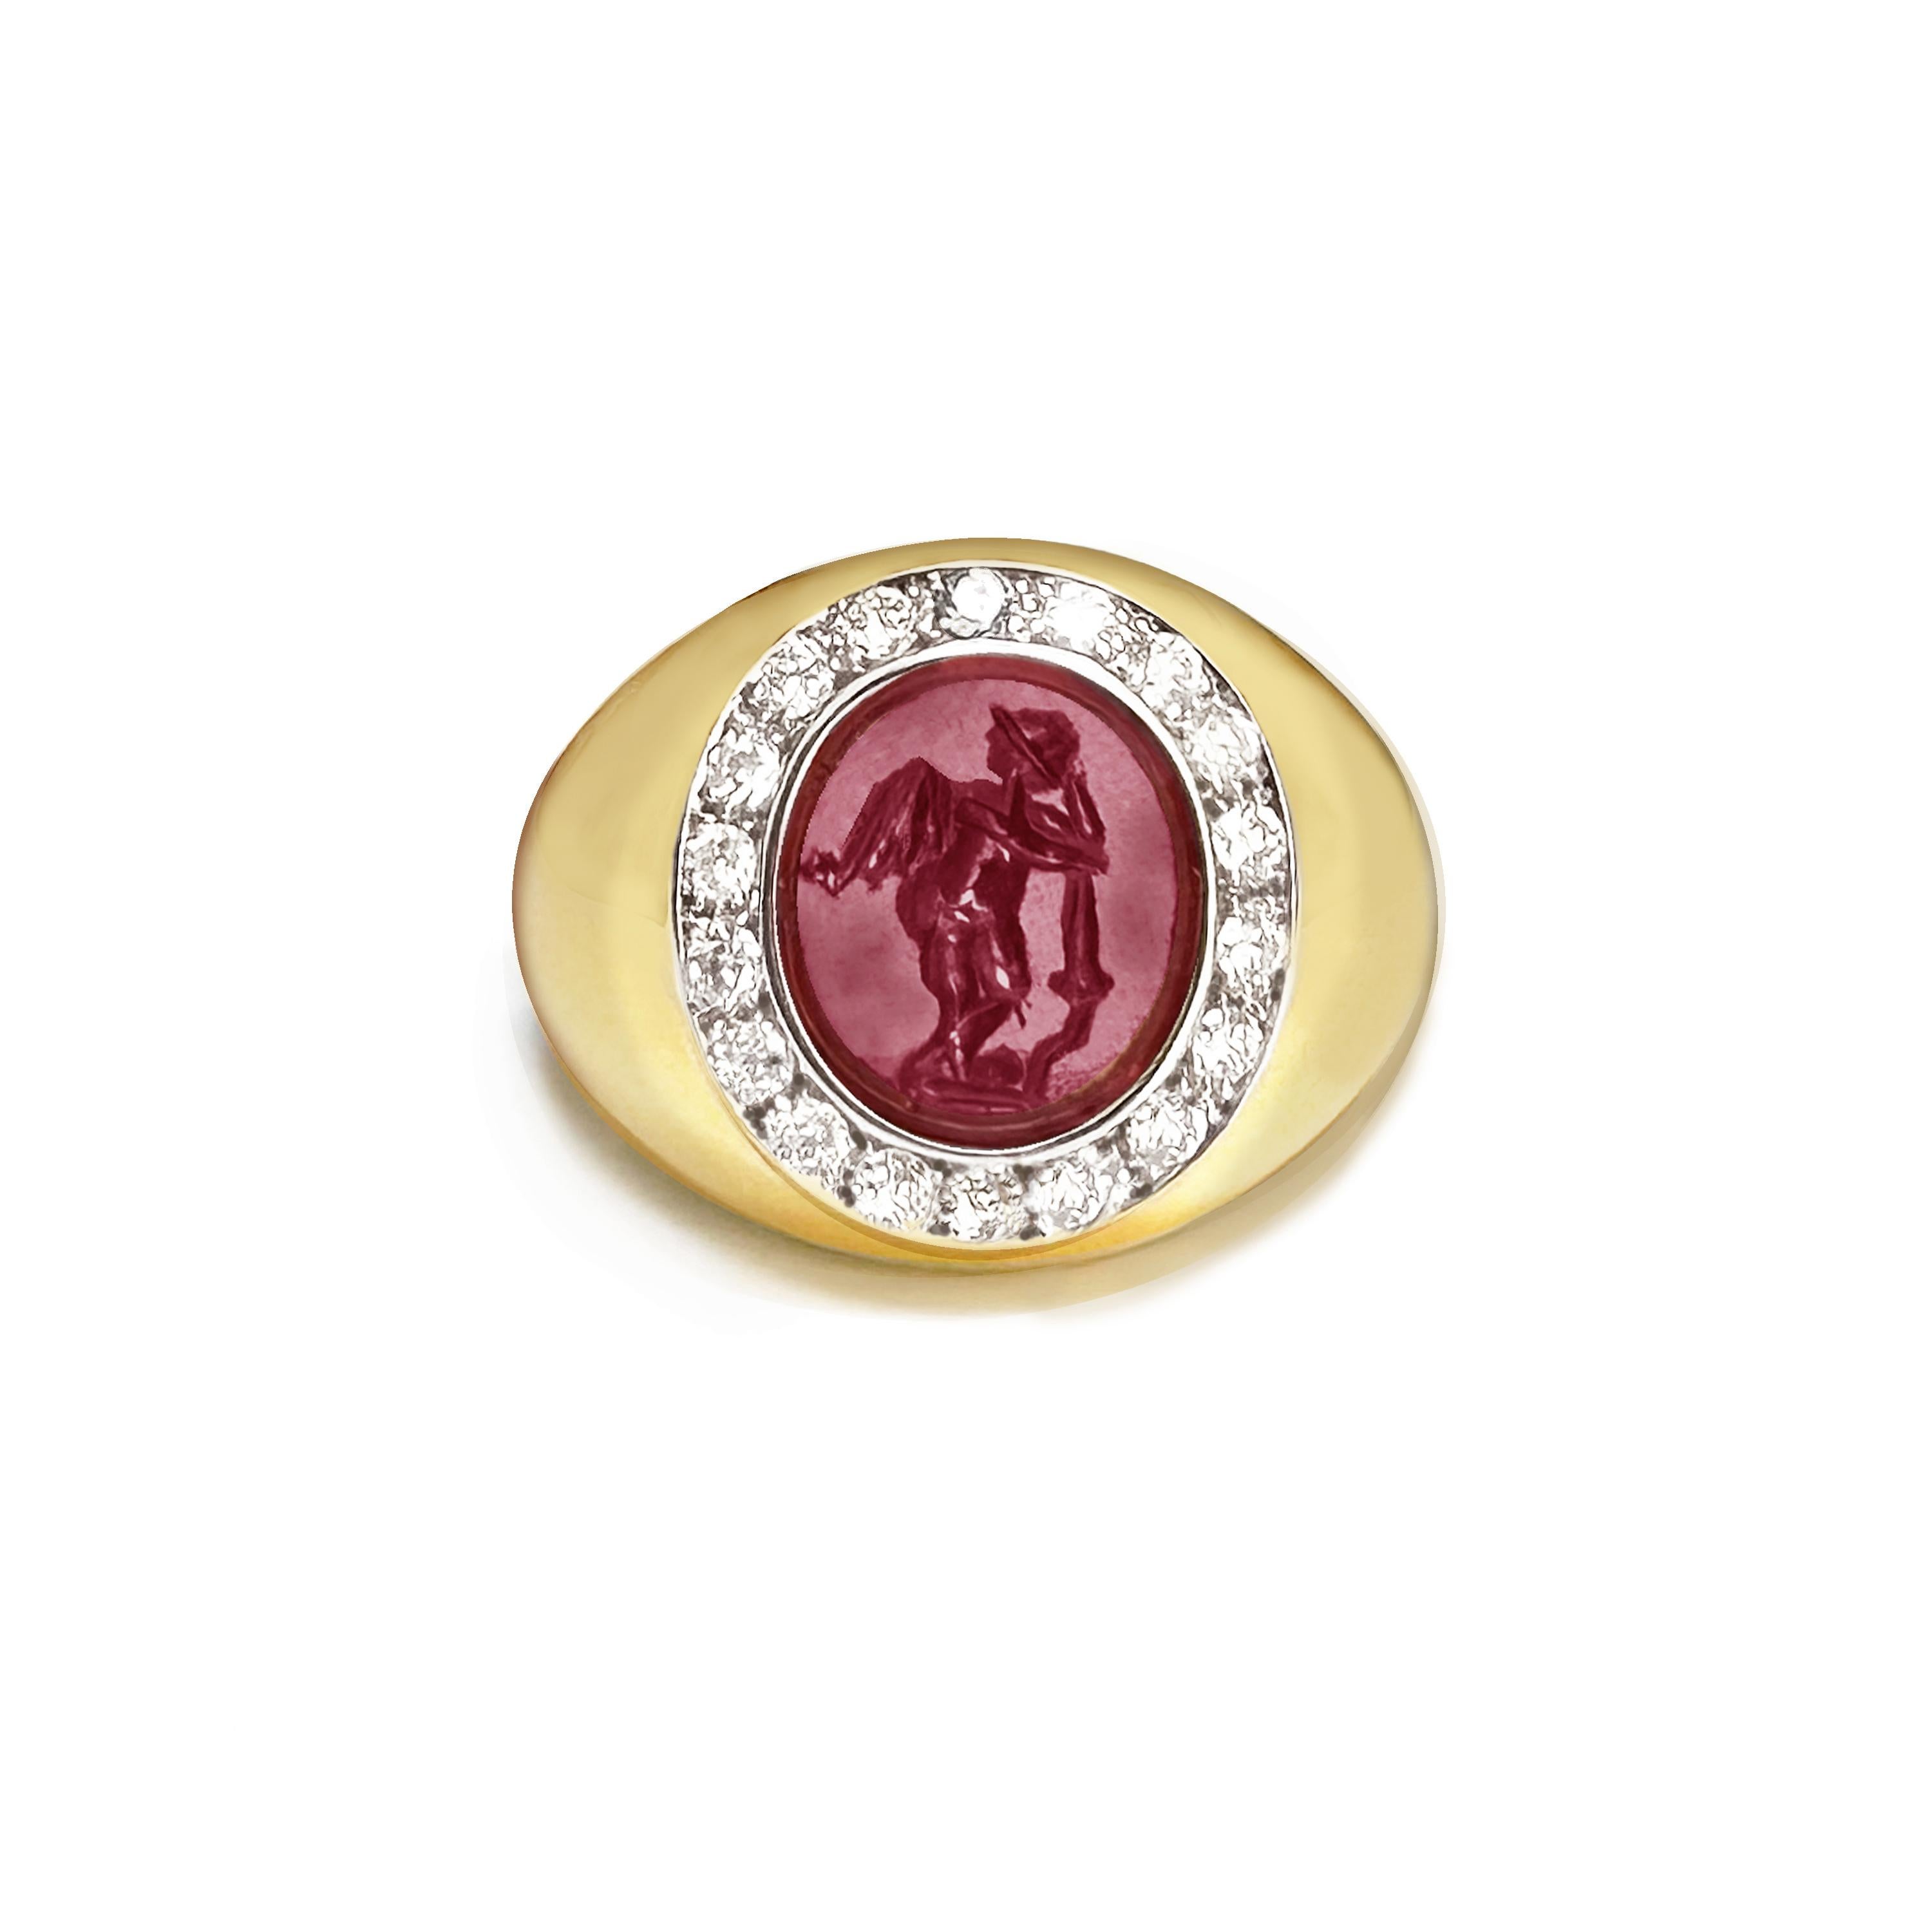 Dieser Ring aus 18-karätigem Gold ist mit einer authentischen römischen Intaglio auf Granat besetzt, die einen geflügelten Amor darstellt, der sich auf eine Fackel stützt. Der zentrale Stein ist von 18 Diamanten mit einem Gesamtgewicht von 0,70